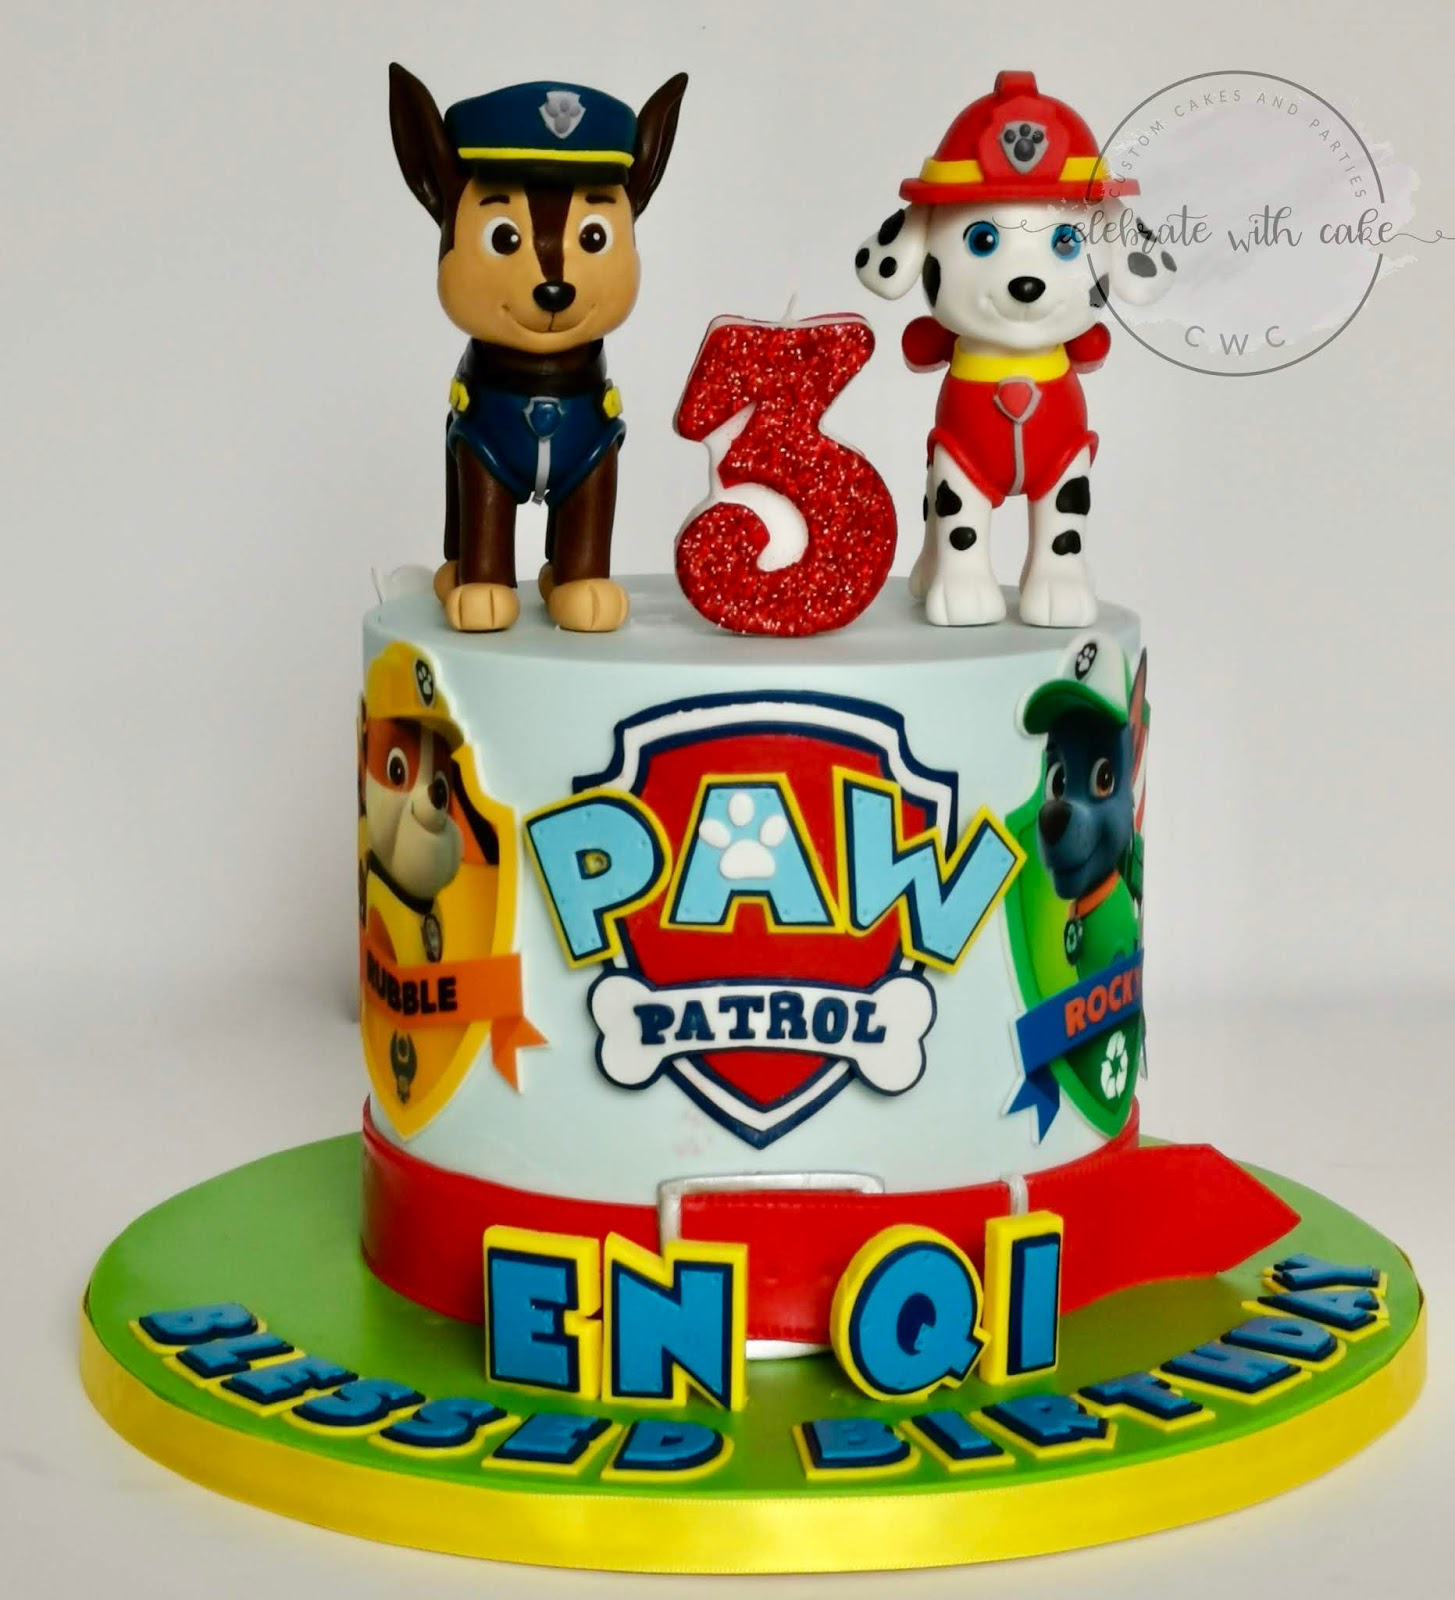 Celebrate with Cake  Paw  Patrol  Single tier Cake 